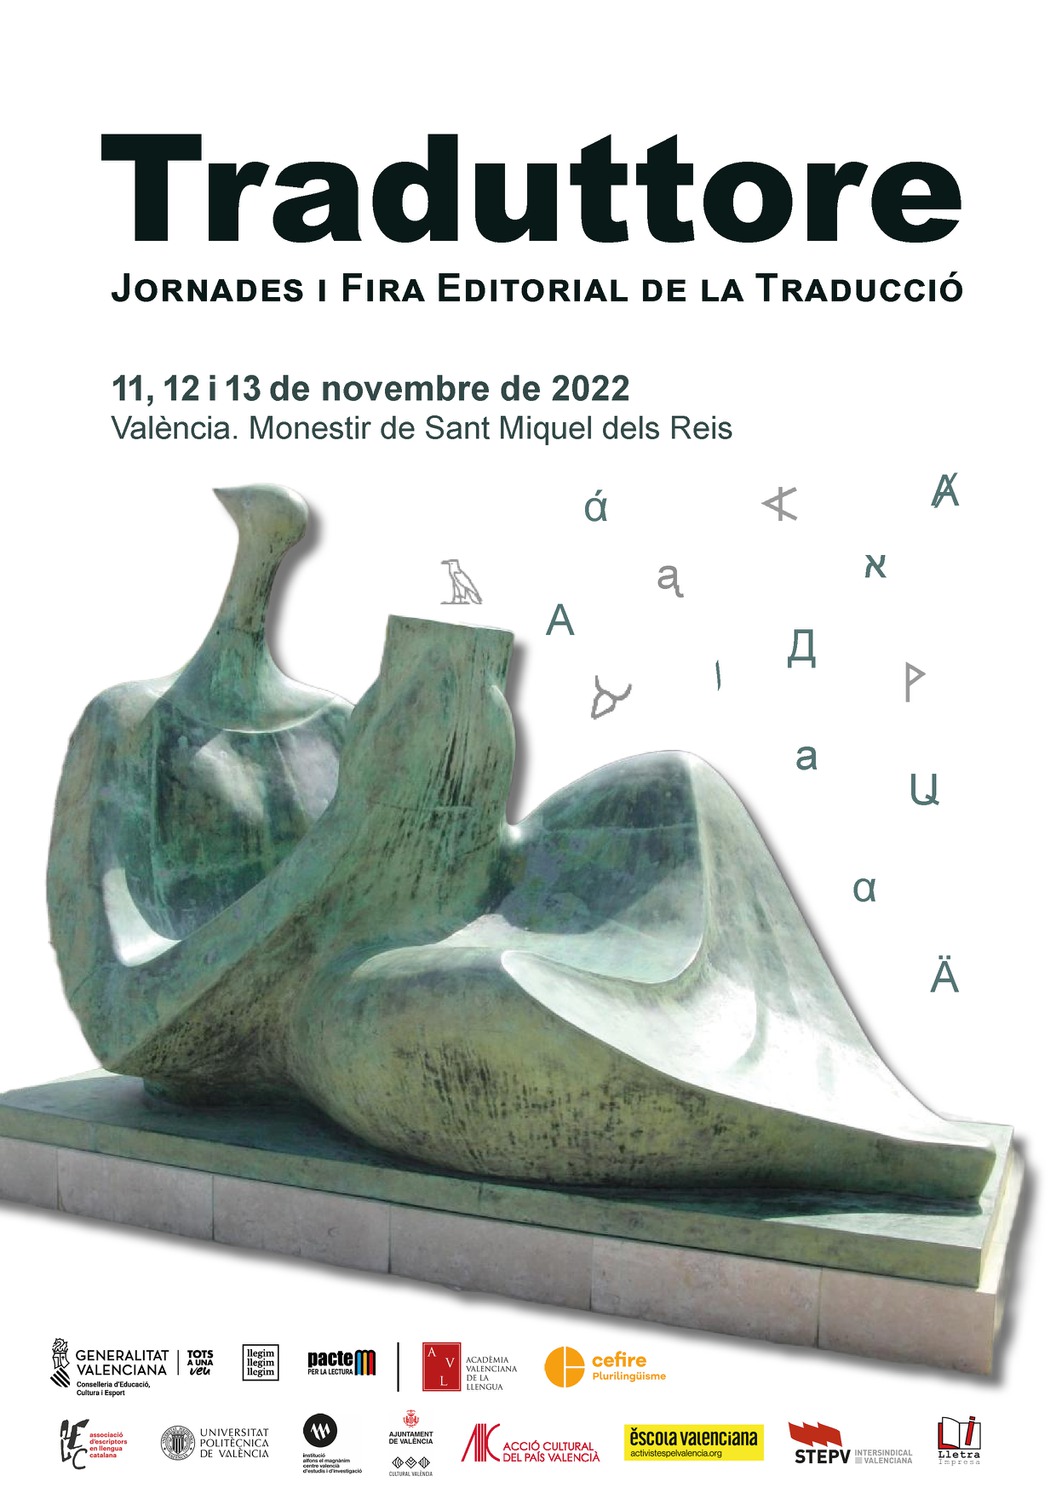 Traduttore, 1.ª edición en Valencia de unas Jornadas y Feria Editorial